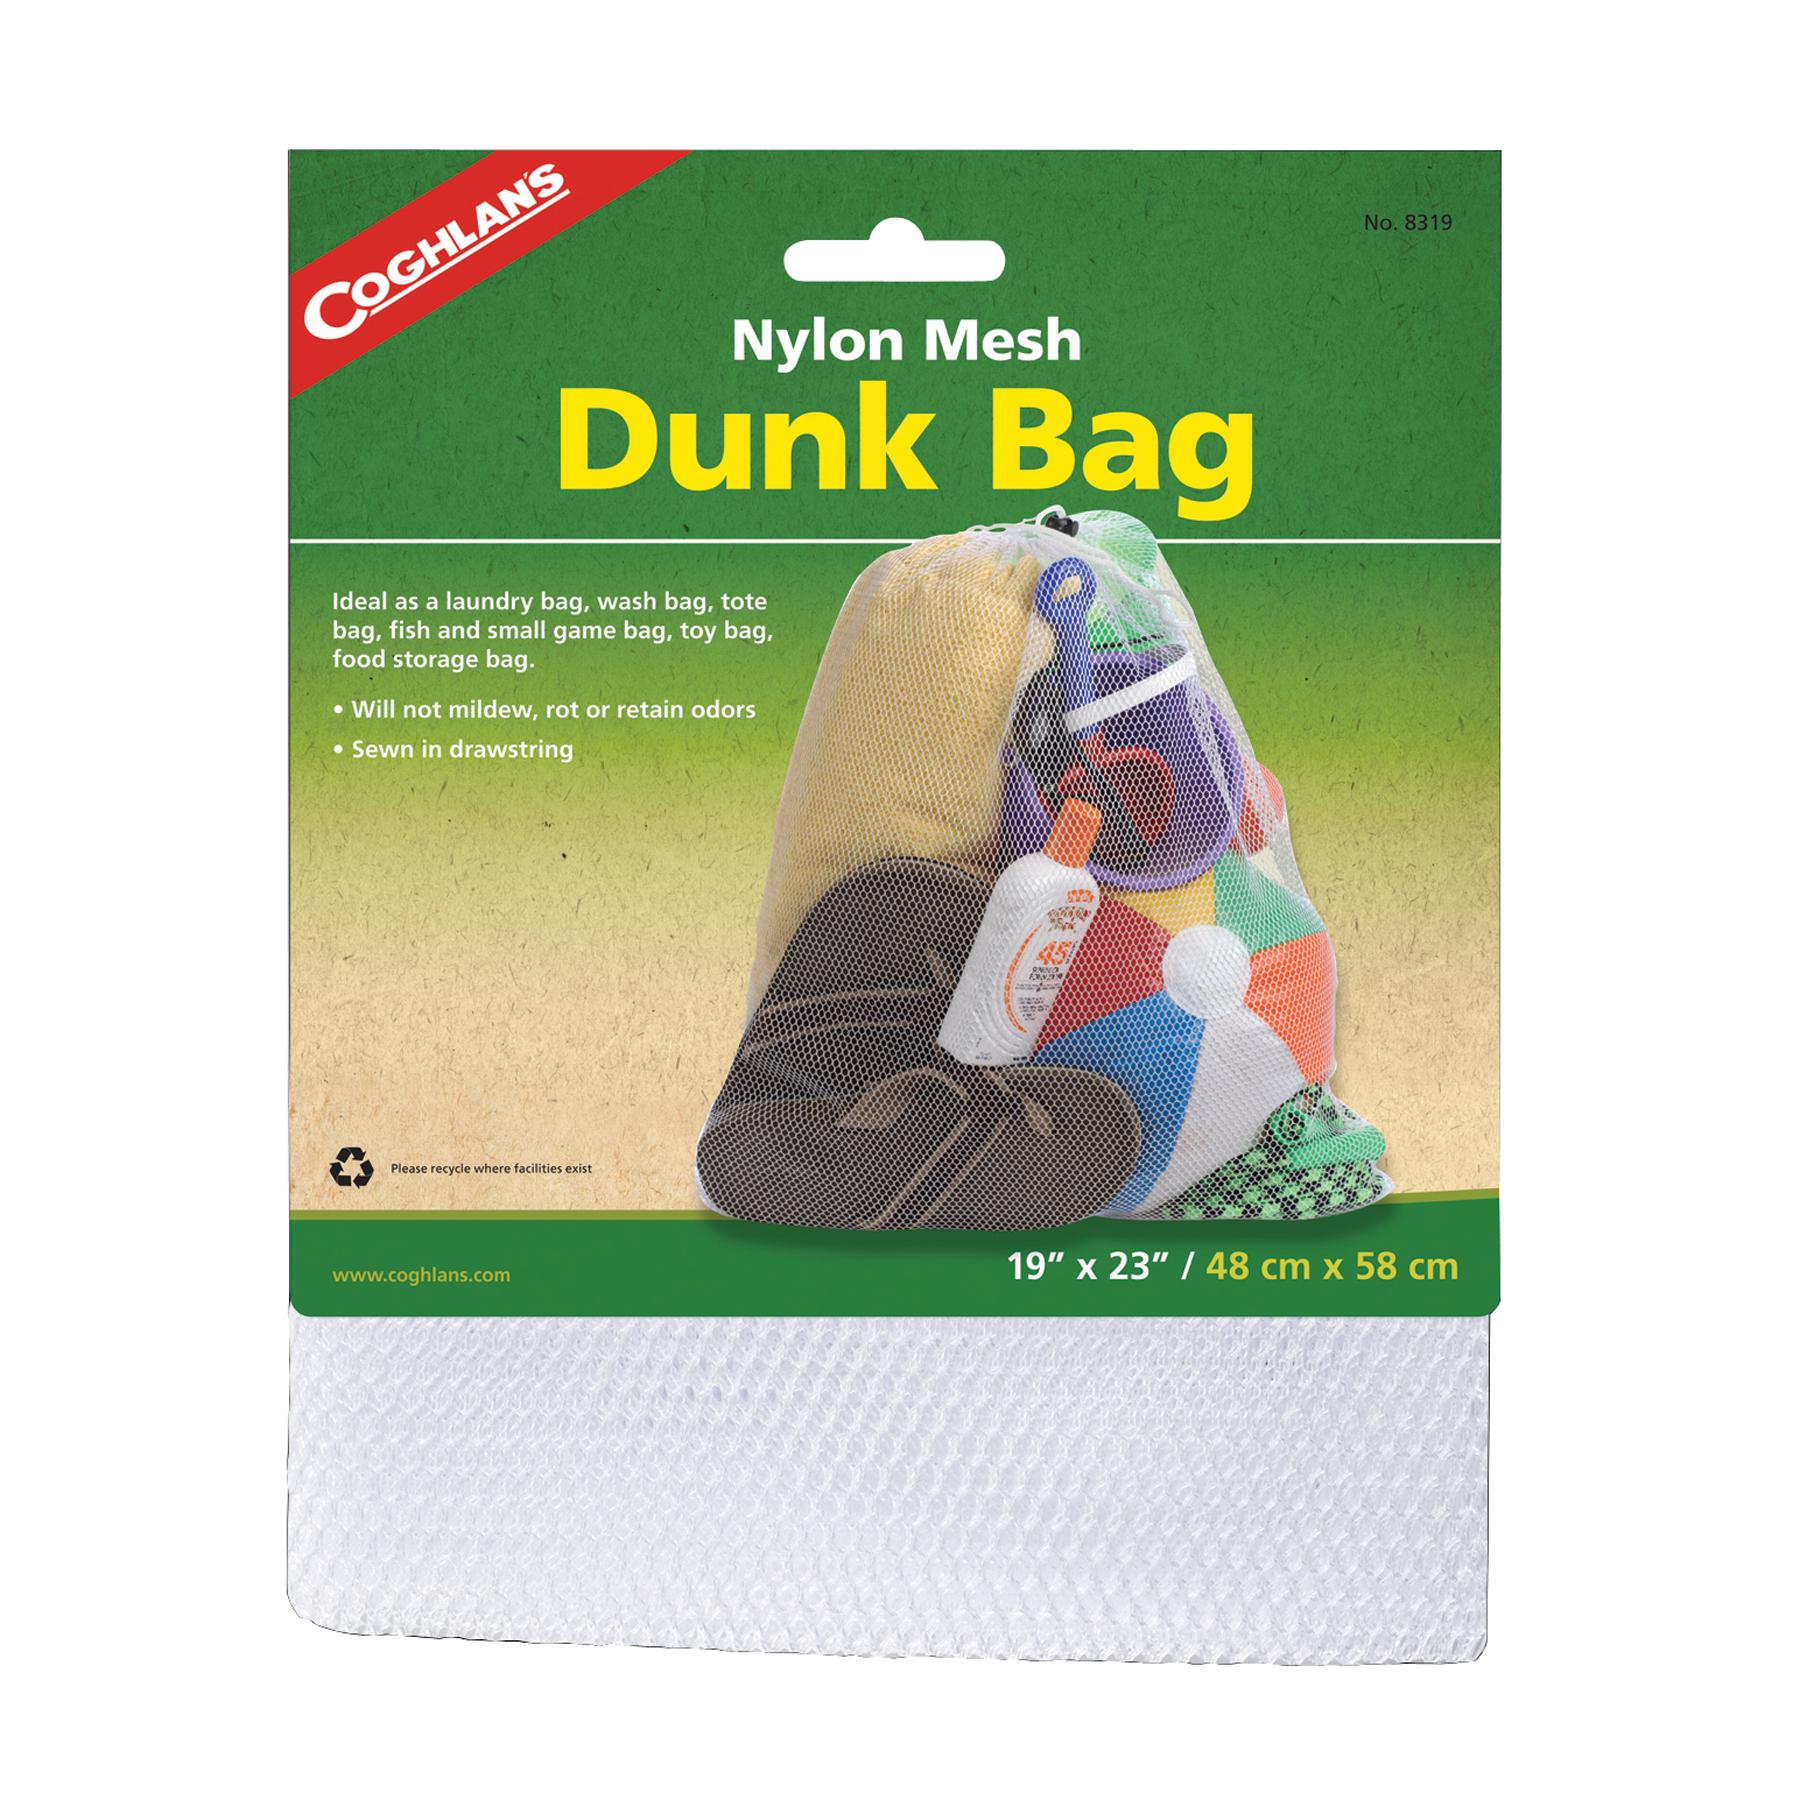  Dunk Bag